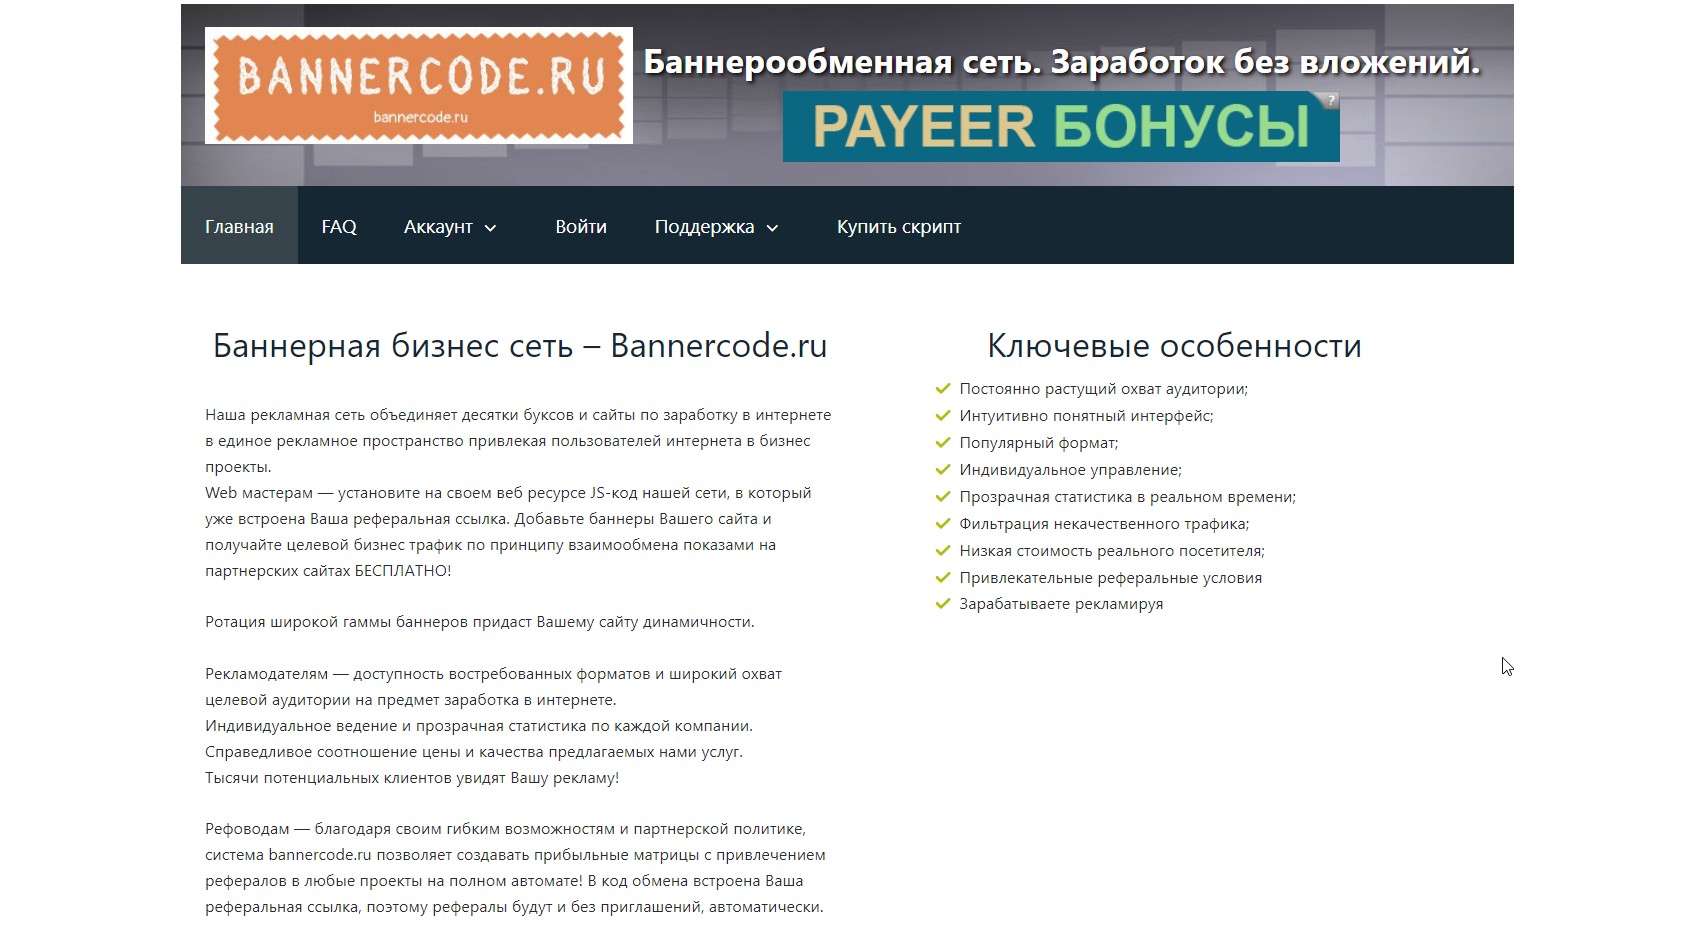 Оригинальный скрипт баннерной рекламы Bannercode.ru